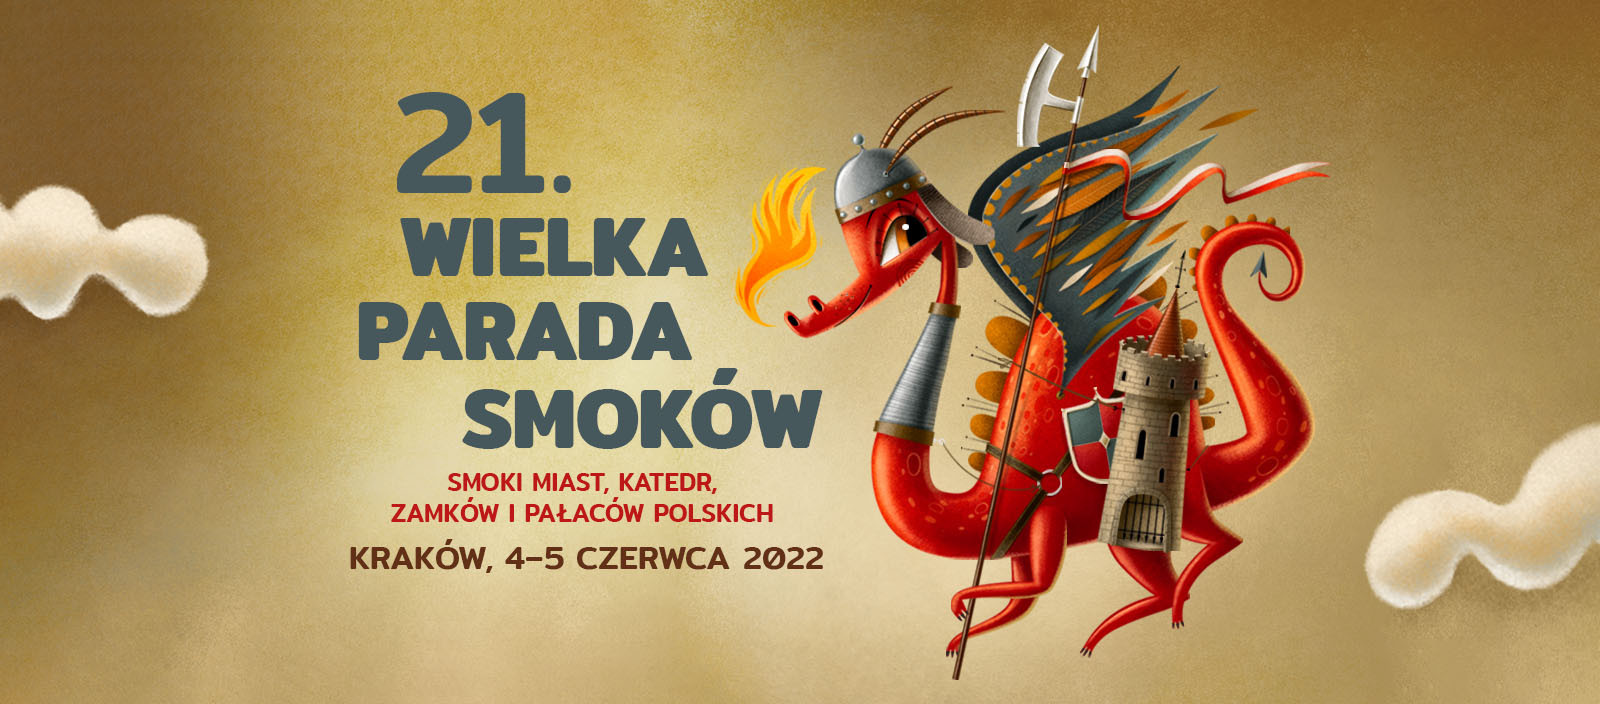 21. WIELKA PARADA SMOKÓW - Smoki miast, katedr, zamków i pałaców polskich